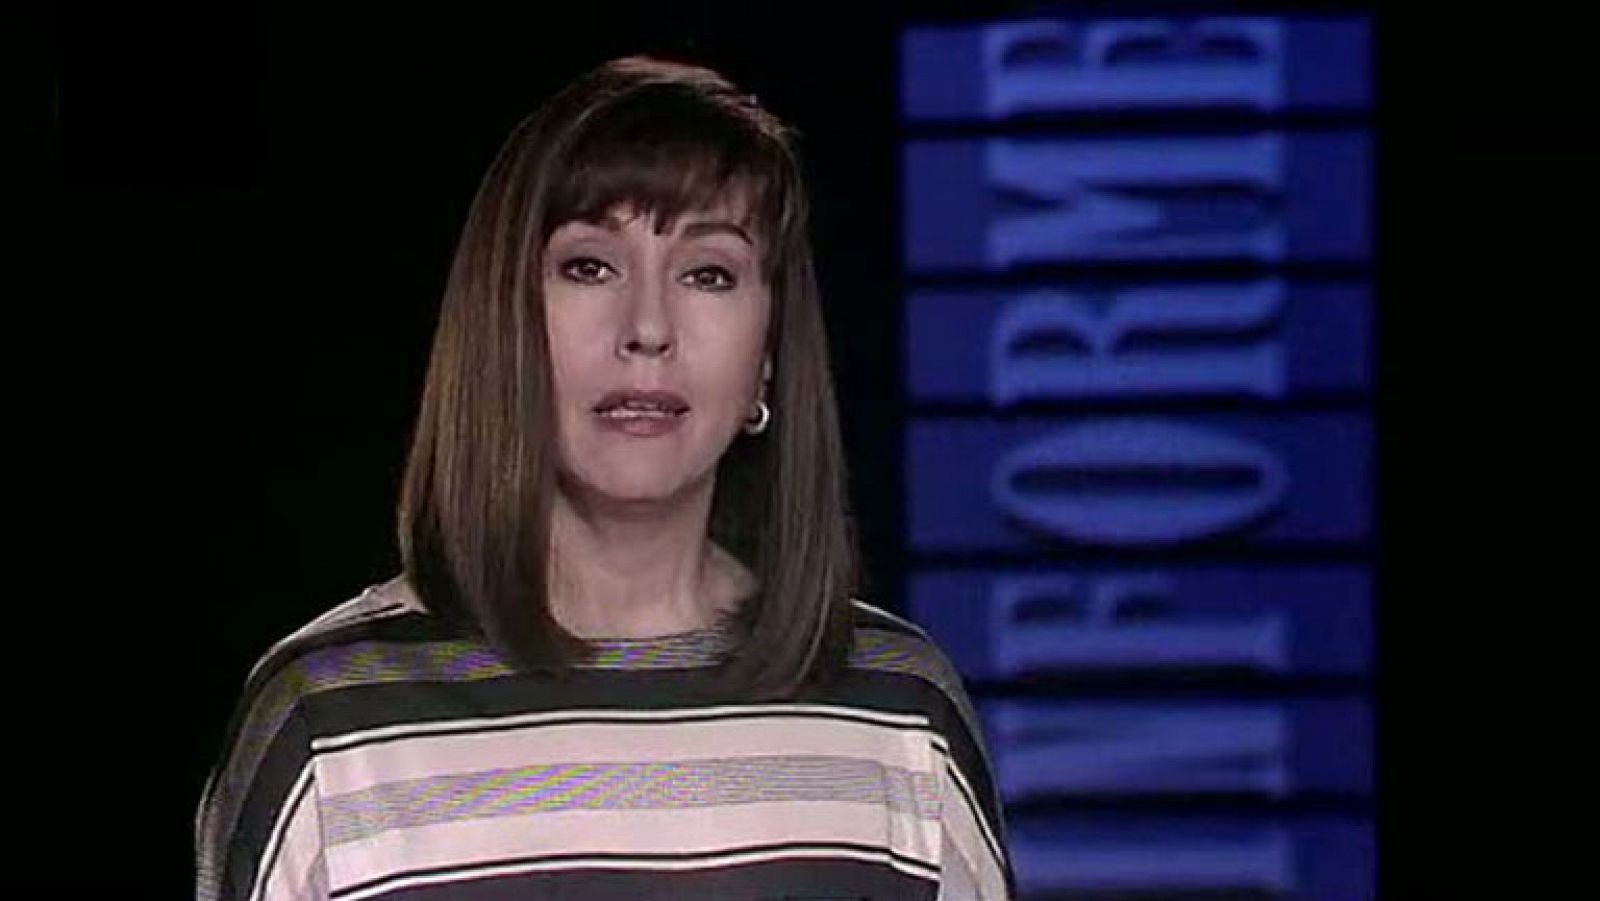 Presentadores Informe Semanal - Mª Carmen García Vela - 1983-1996